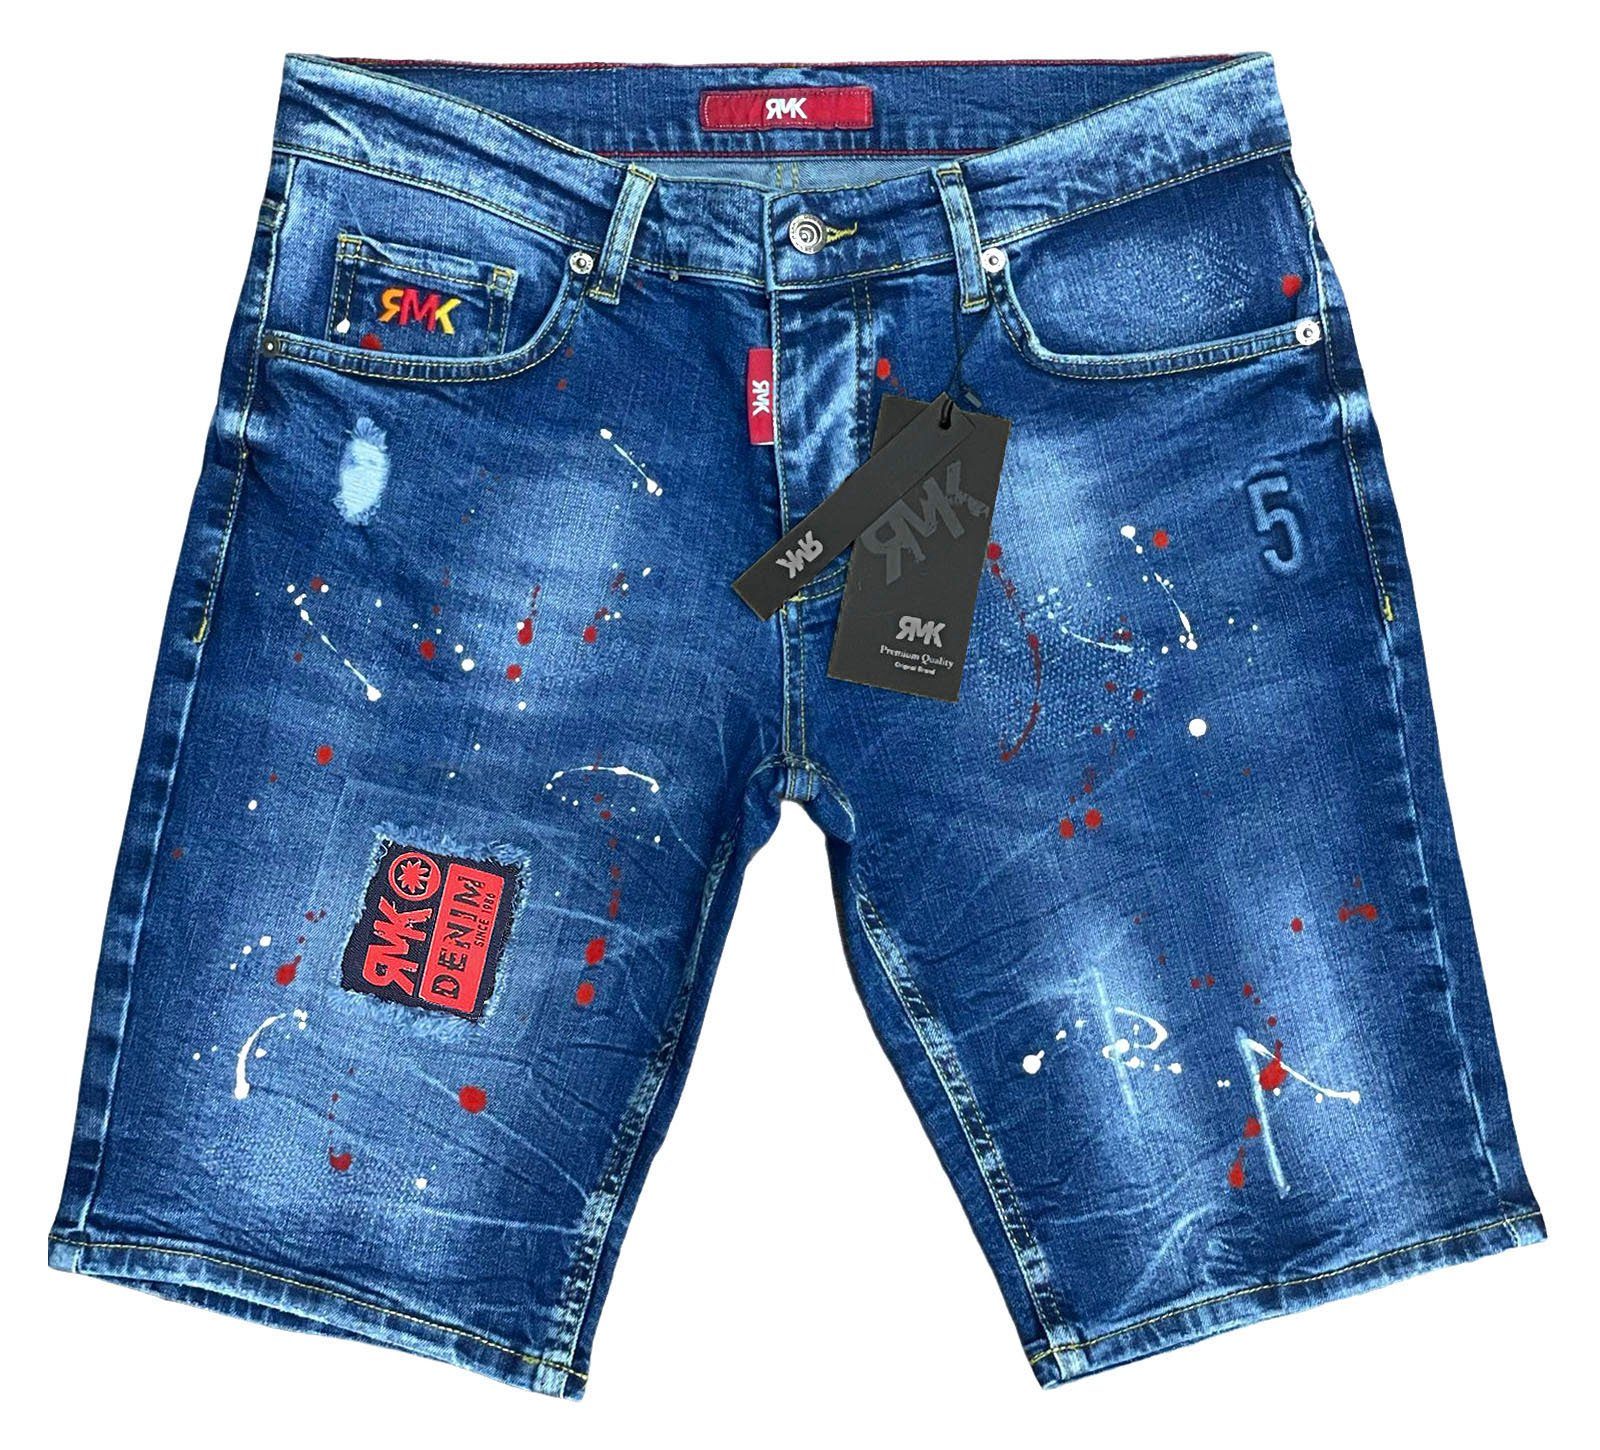 RMK Jeansshorts 5 mit Blue Pocket Jeans Farbspritzern short